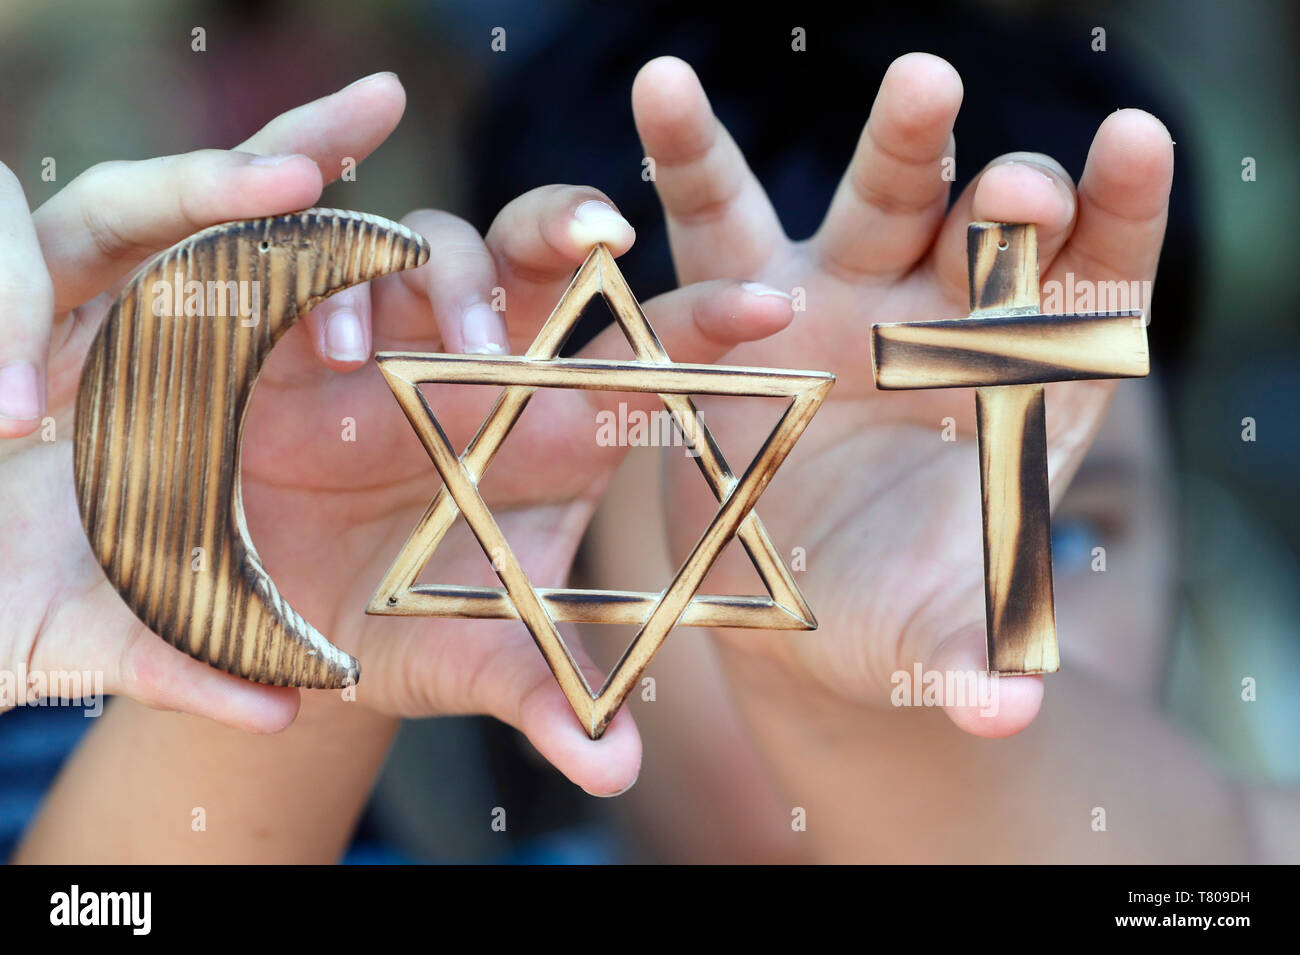 Le christianisme, l'Islam, le judaïsme, les trois religions monothéistes, avec des symboles de l'étoile juive, musulmane et chrétienne Crescent Cross, Vietnam Banque D'Images